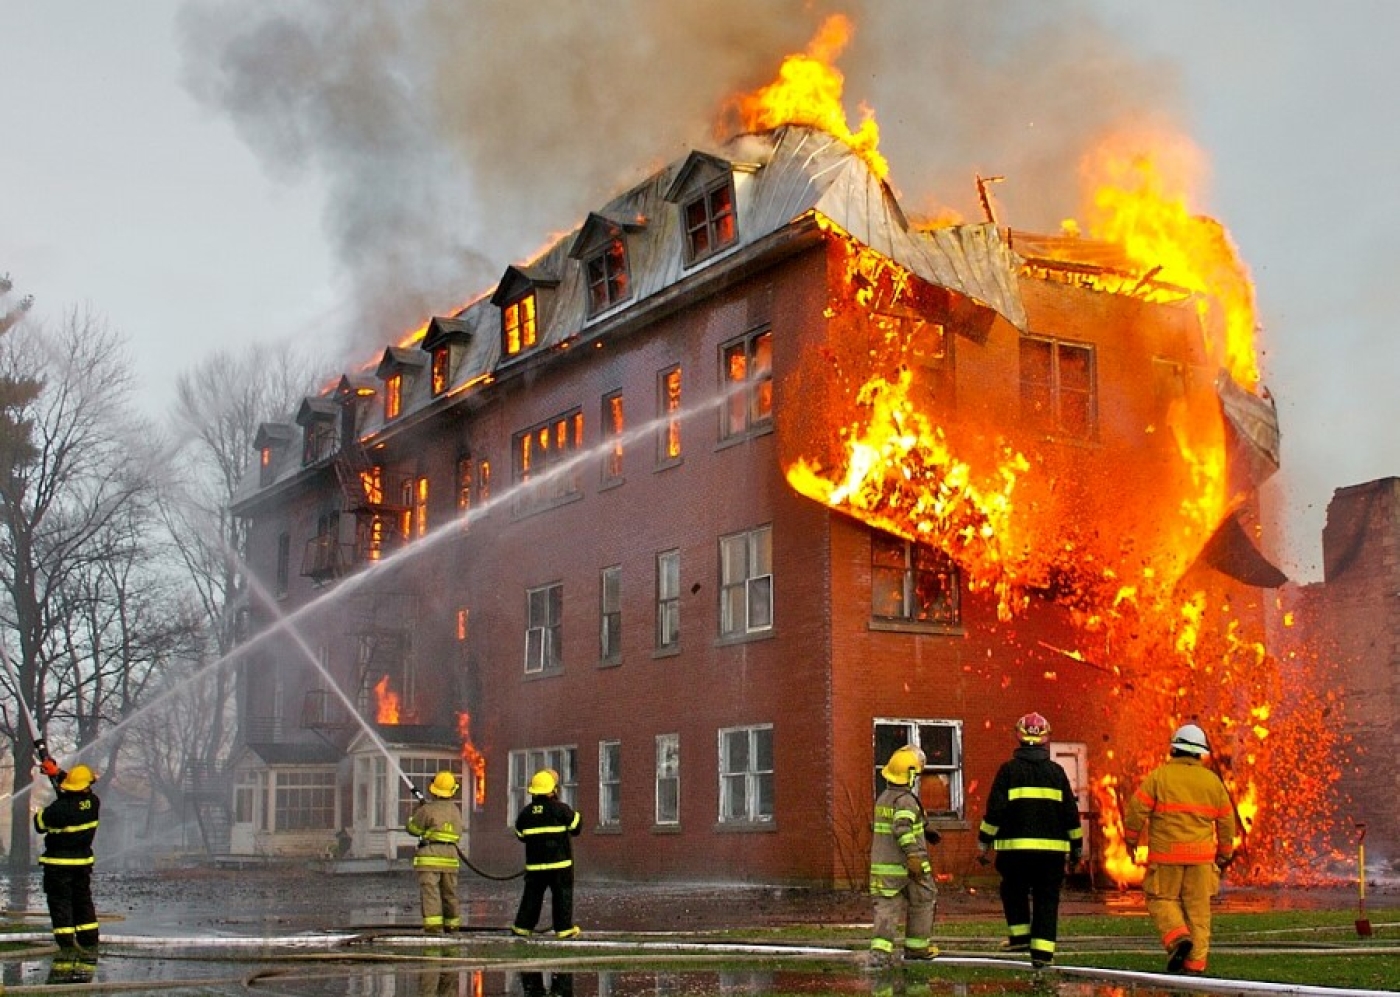 7 из 10 пожаров в жилом фонде происходят по вине курильщиков!